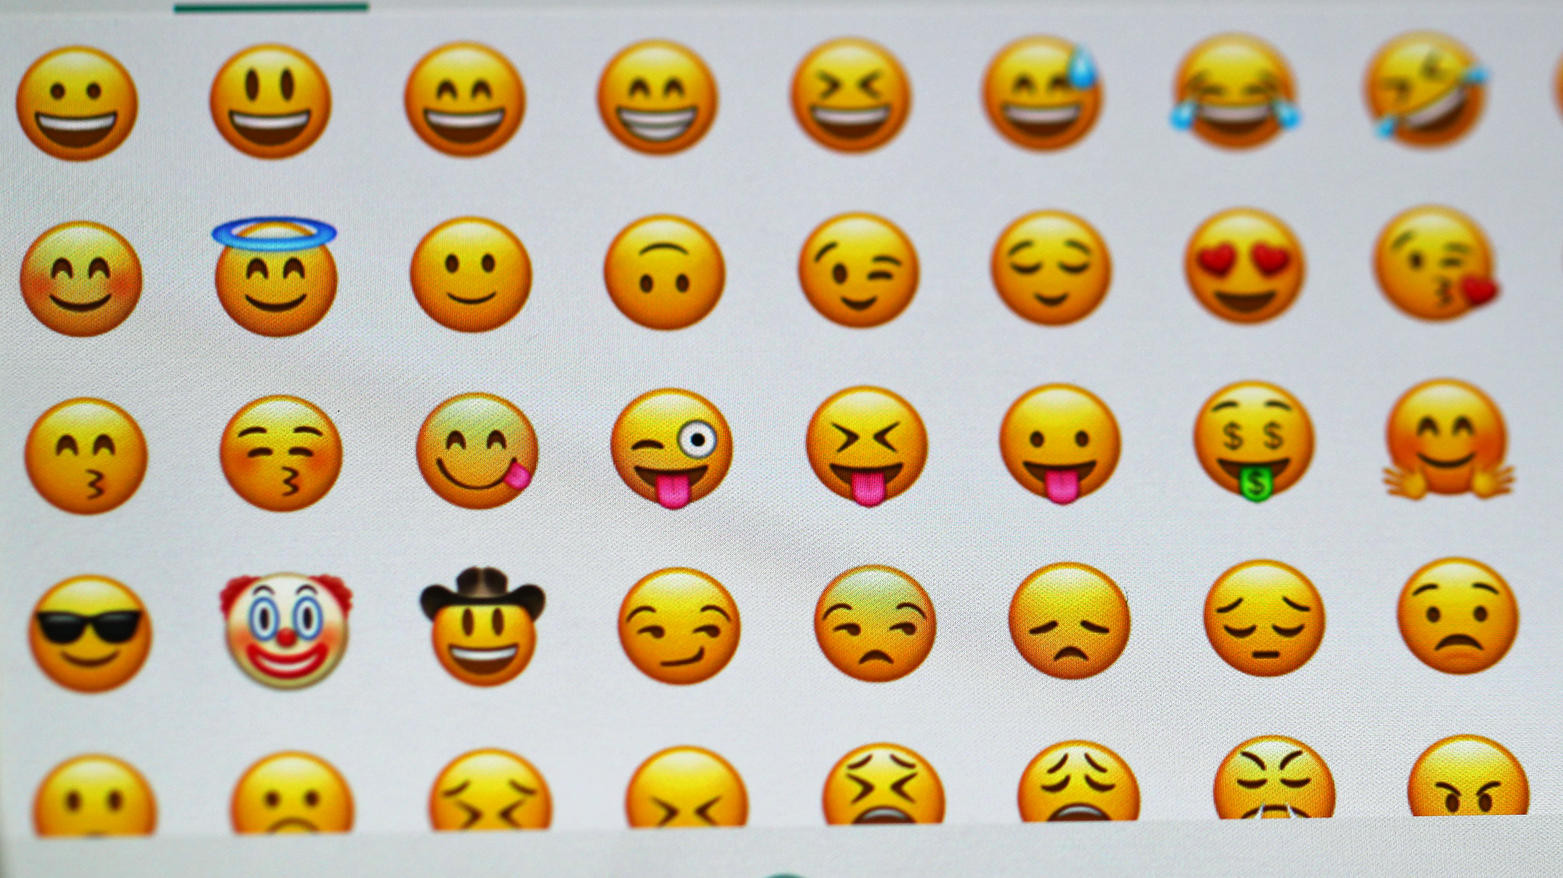 Geburtstagswünsche Whatsapp Emoji
 Welt Emoji Tag Emojis verändern Chats und unsere Sprache